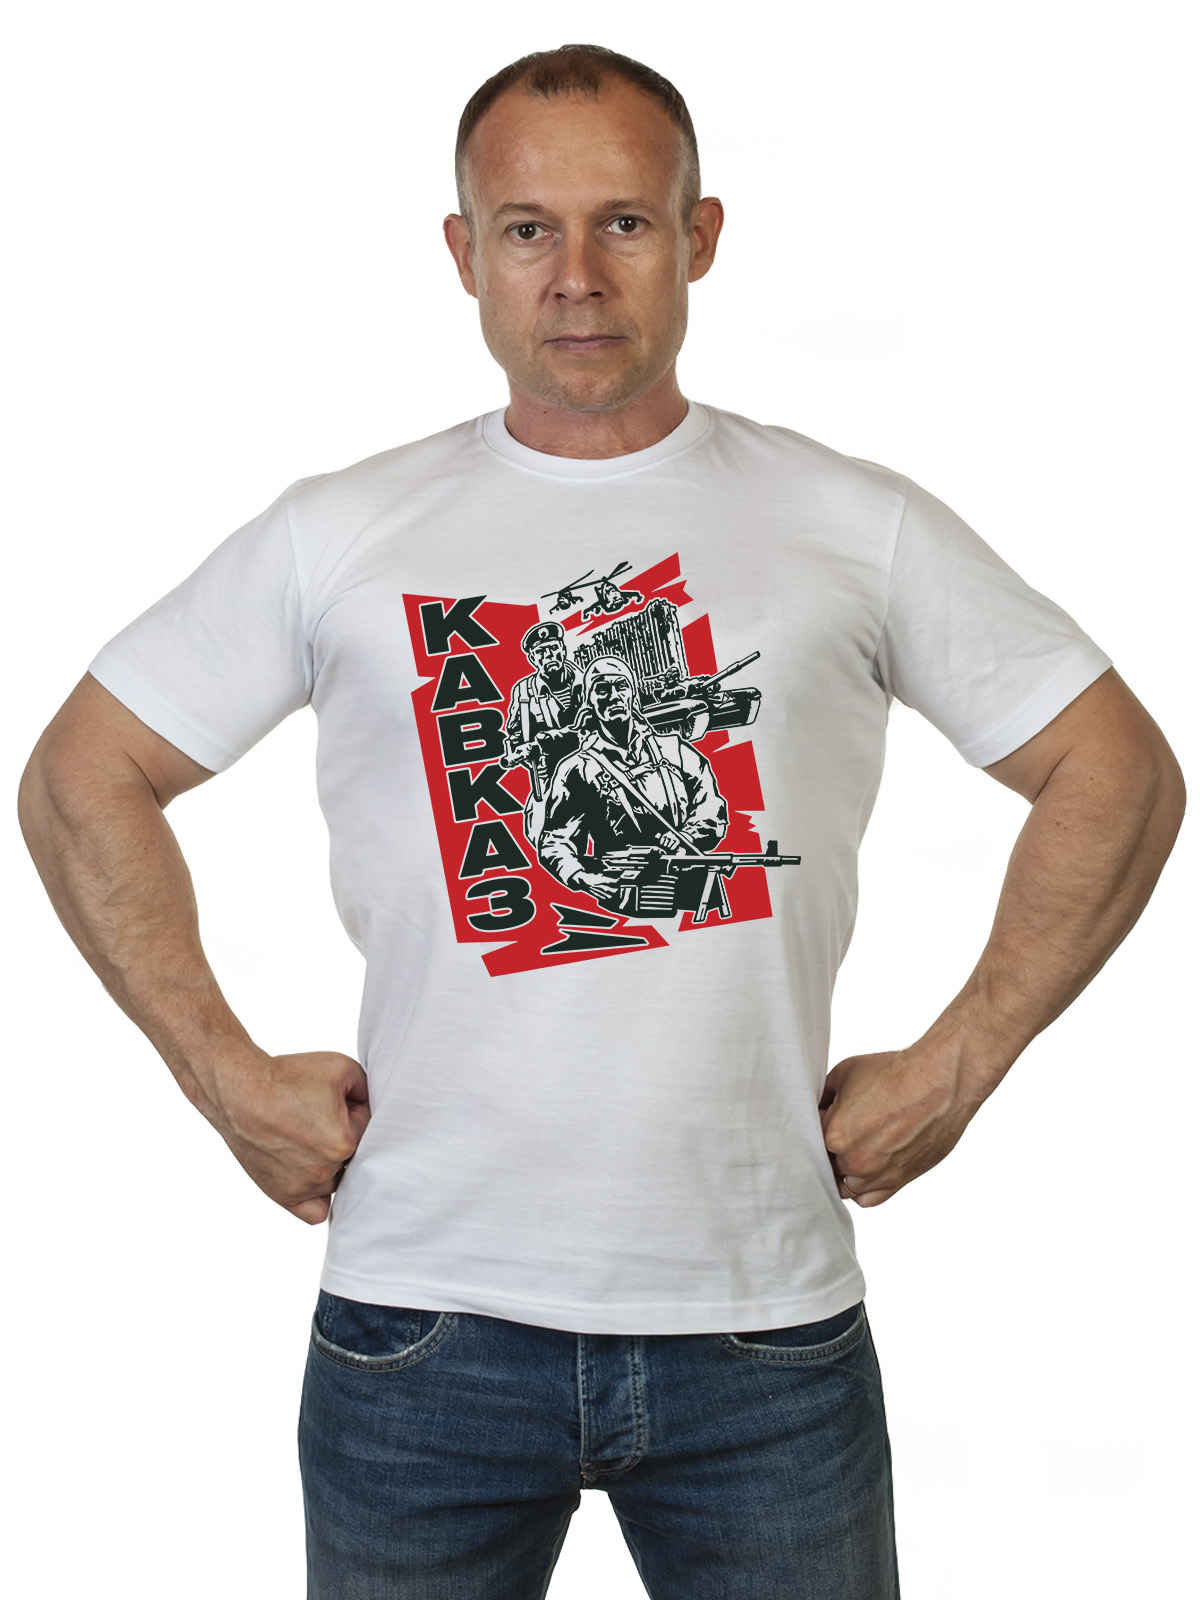 Купить футболку на подарок Ветерану боевых действий на Кавказе